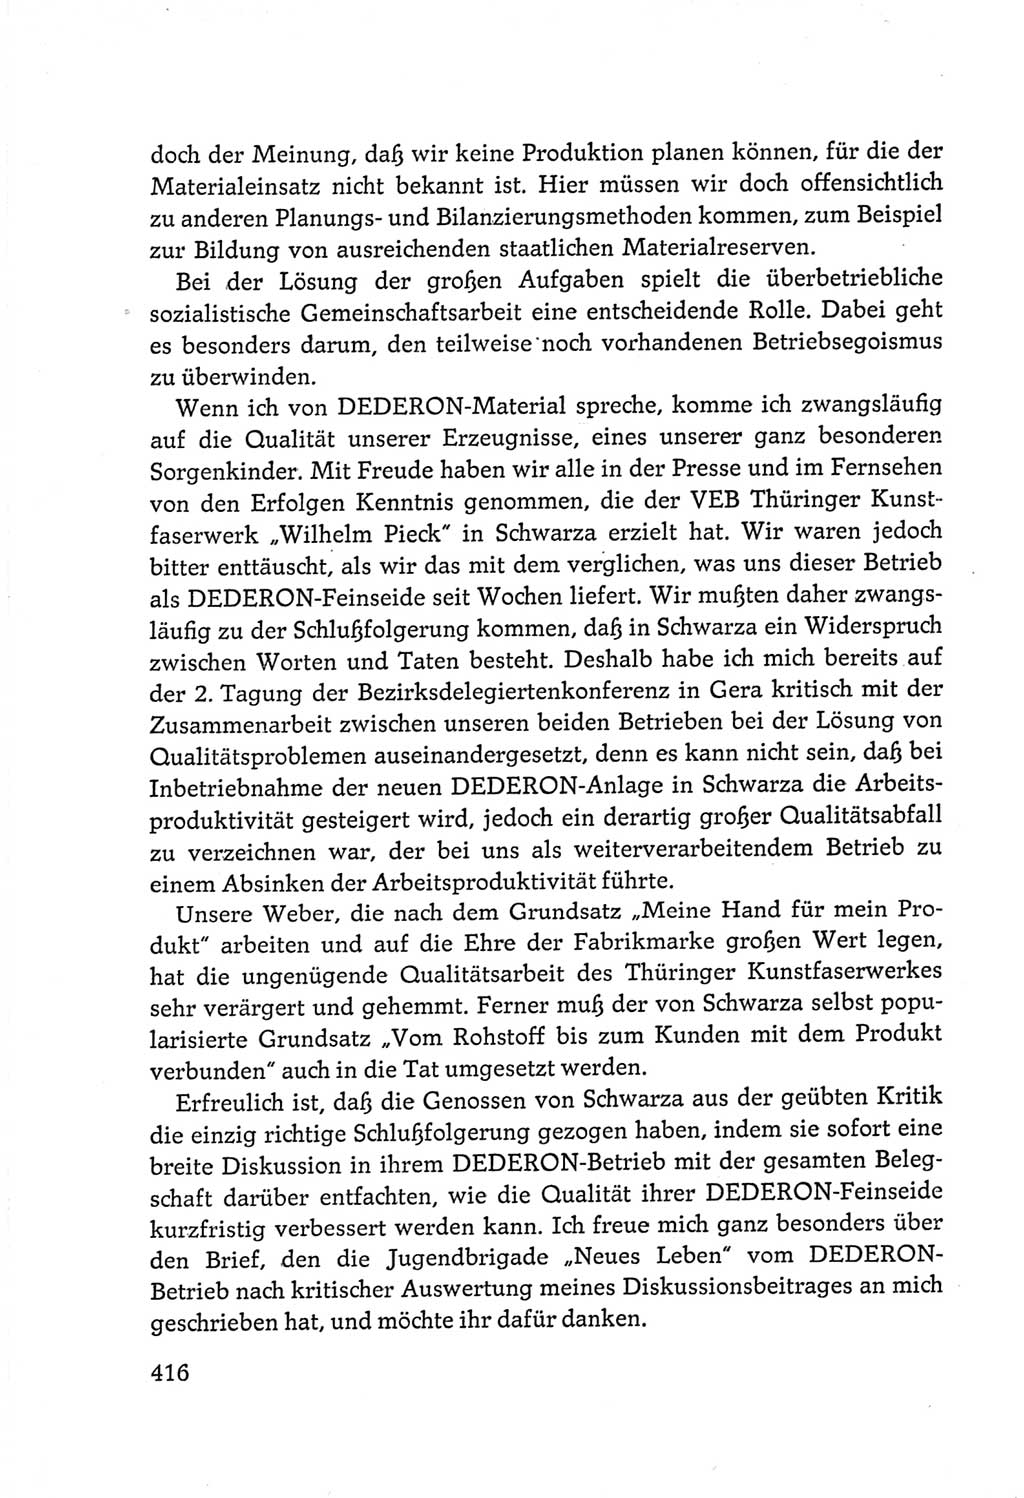 Protokoll der Verhandlungen des Ⅵ. Parteitages der Sozialistischen Einheitspartei Deutschlands (SED) [Deutsche Demokratische Republik (DDR)] 1963, Band Ⅲ, Seite 416 (Prot. Verh. Ⅵ. PT SED DDR 1963, Bd. Ⅲ, S. 416)